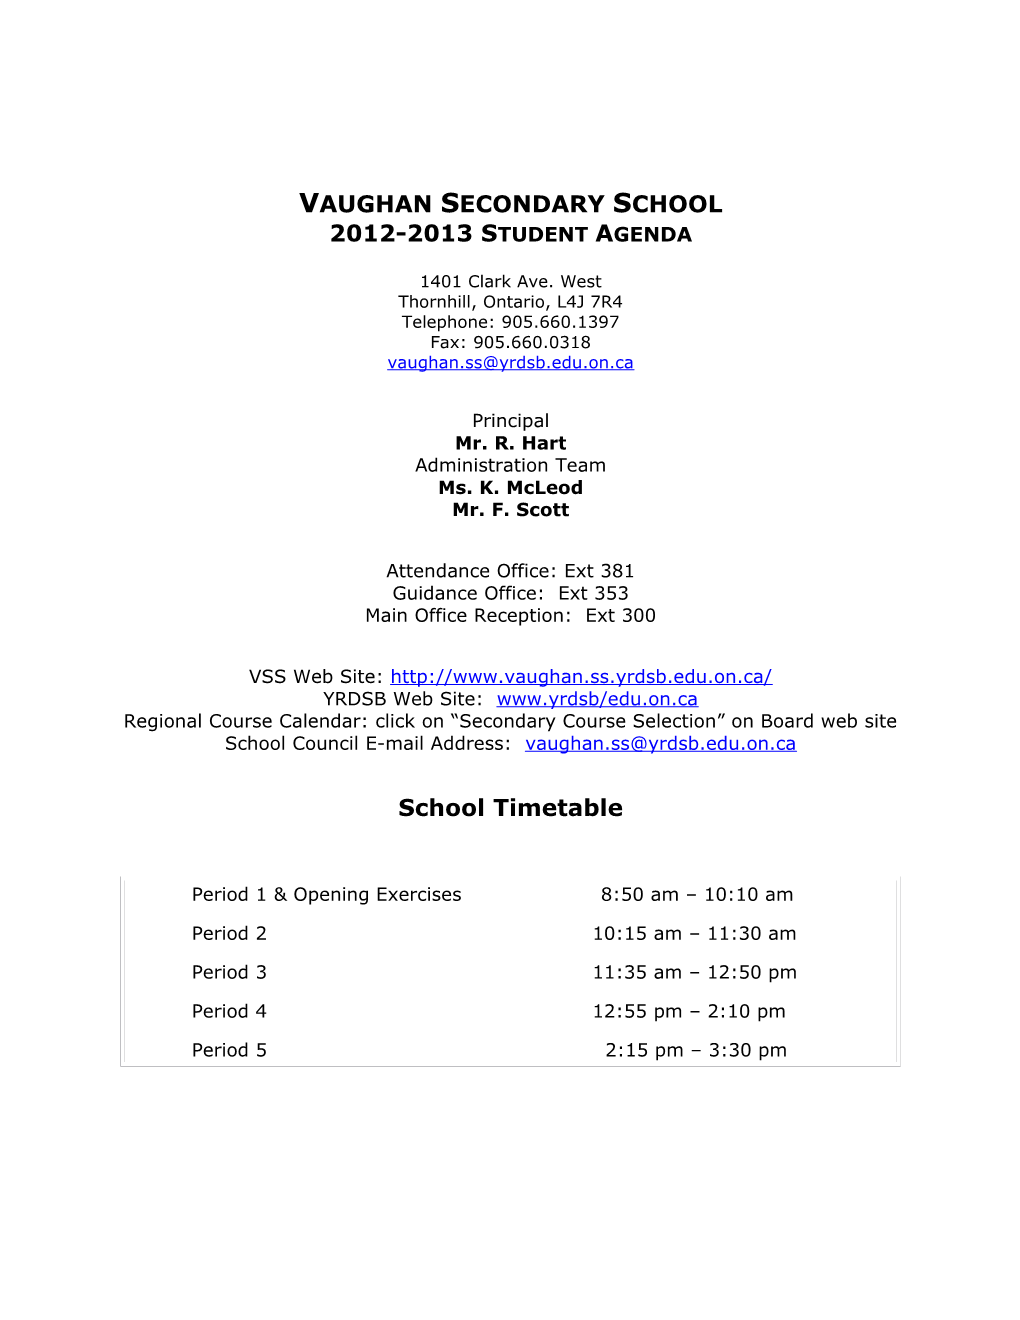 VSS School Information Handbook